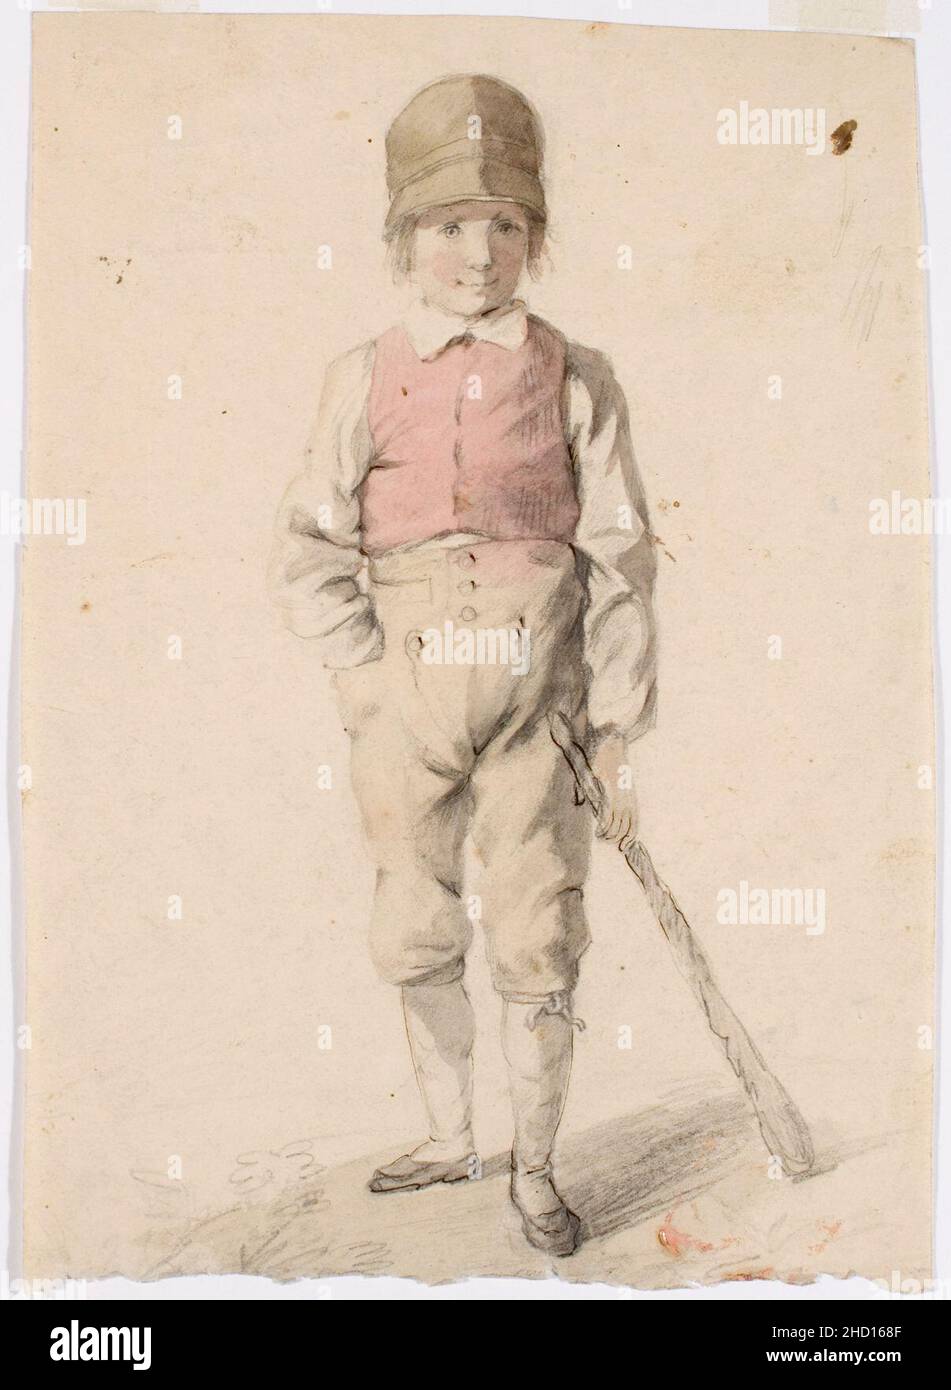 Robert Wilhelm Ekman - Seisova poika karttu vasemmassa kädessä Stock Photo